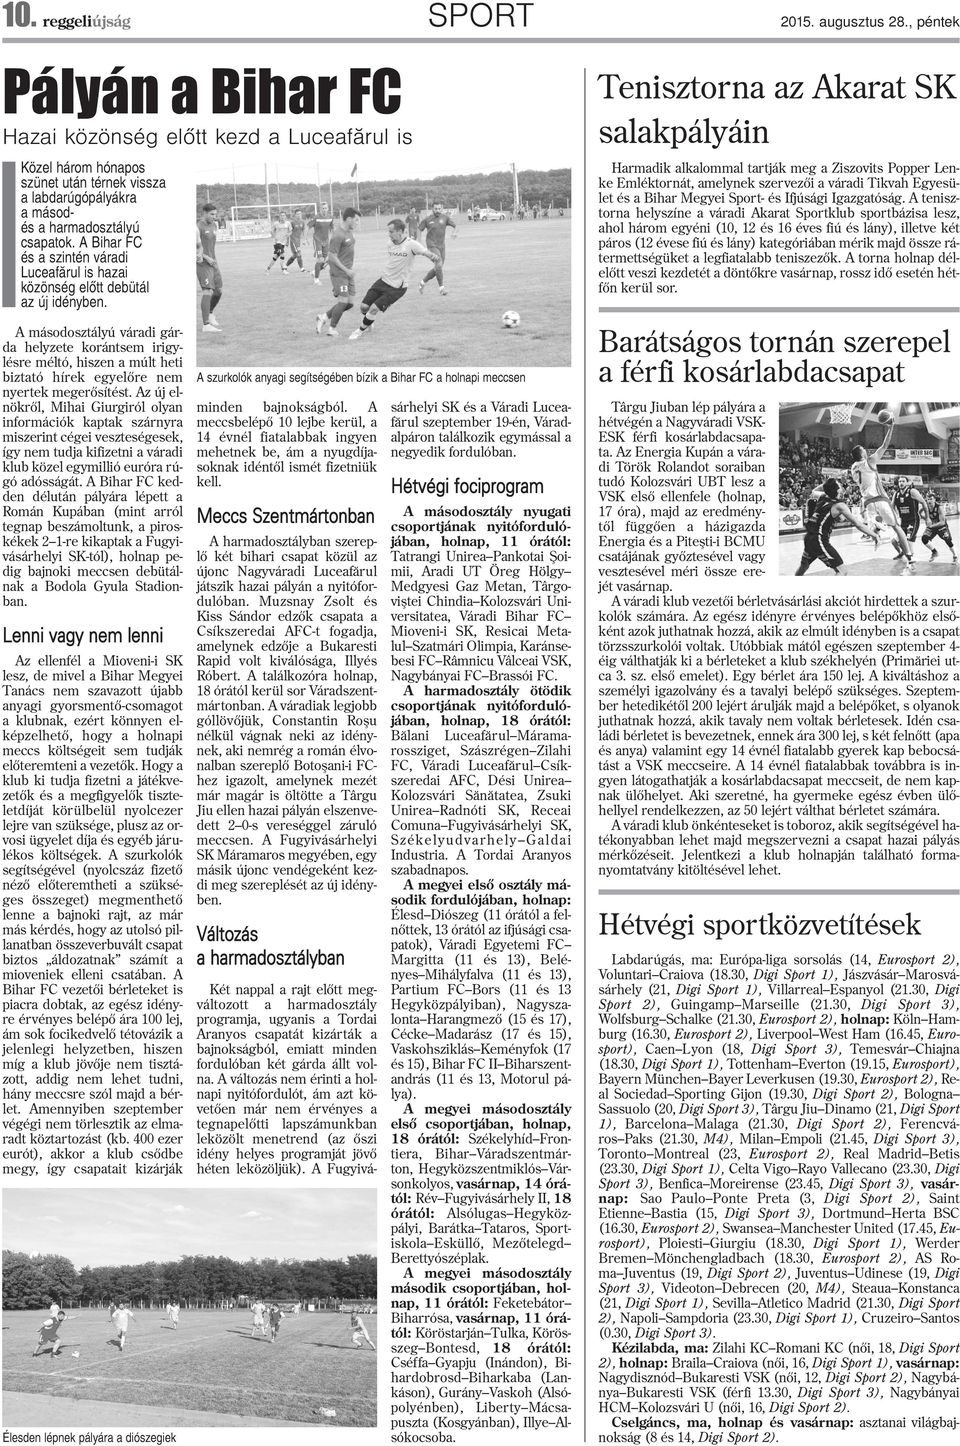 A Bihar FC és a szintén váradi Luceafãru is hazai közönség eõtt debütá az új idényben.